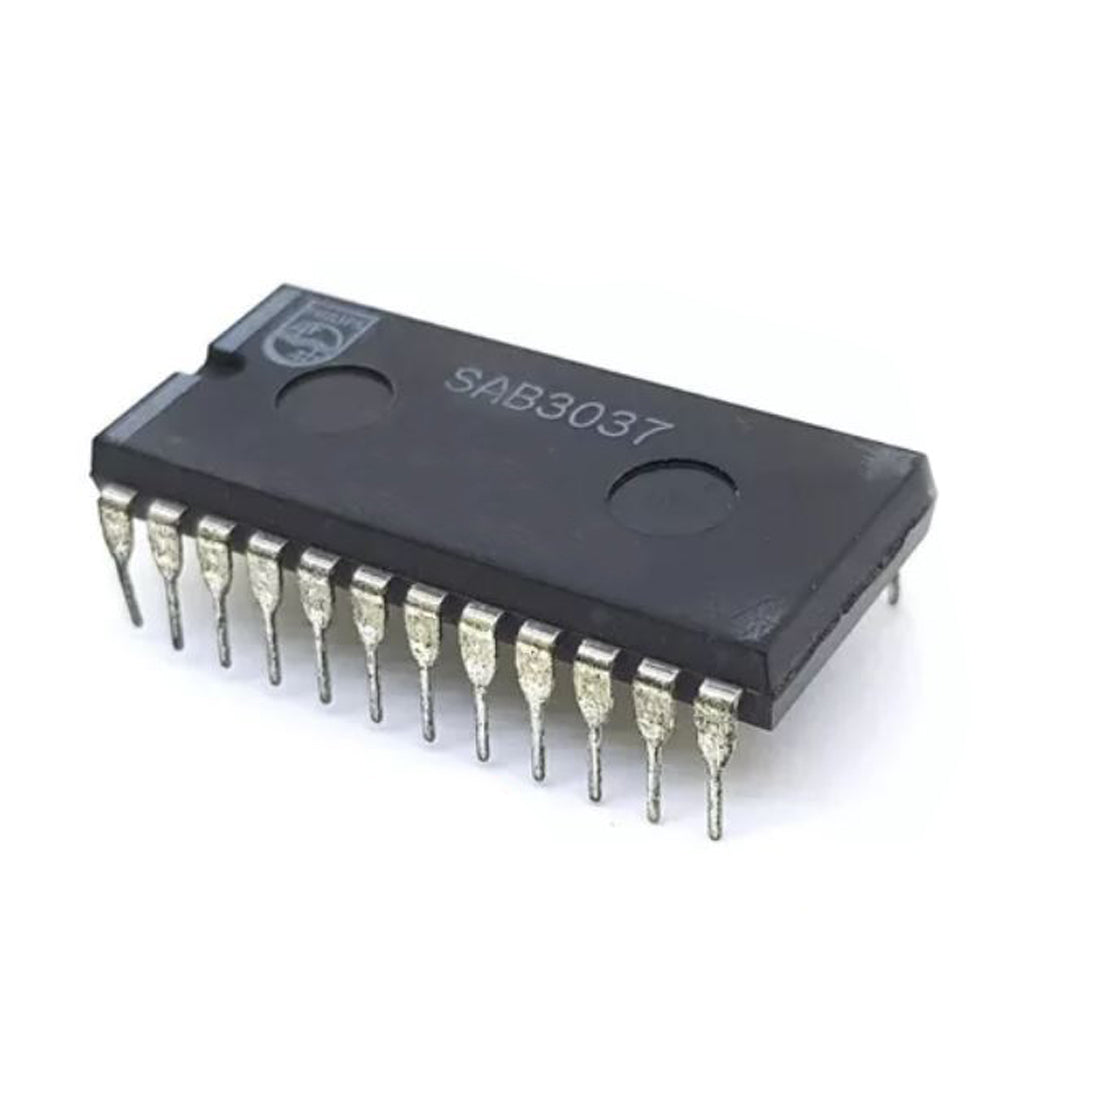 PHILIPS SAB3037 componente elettronico, circuito integrato, 24 contatti